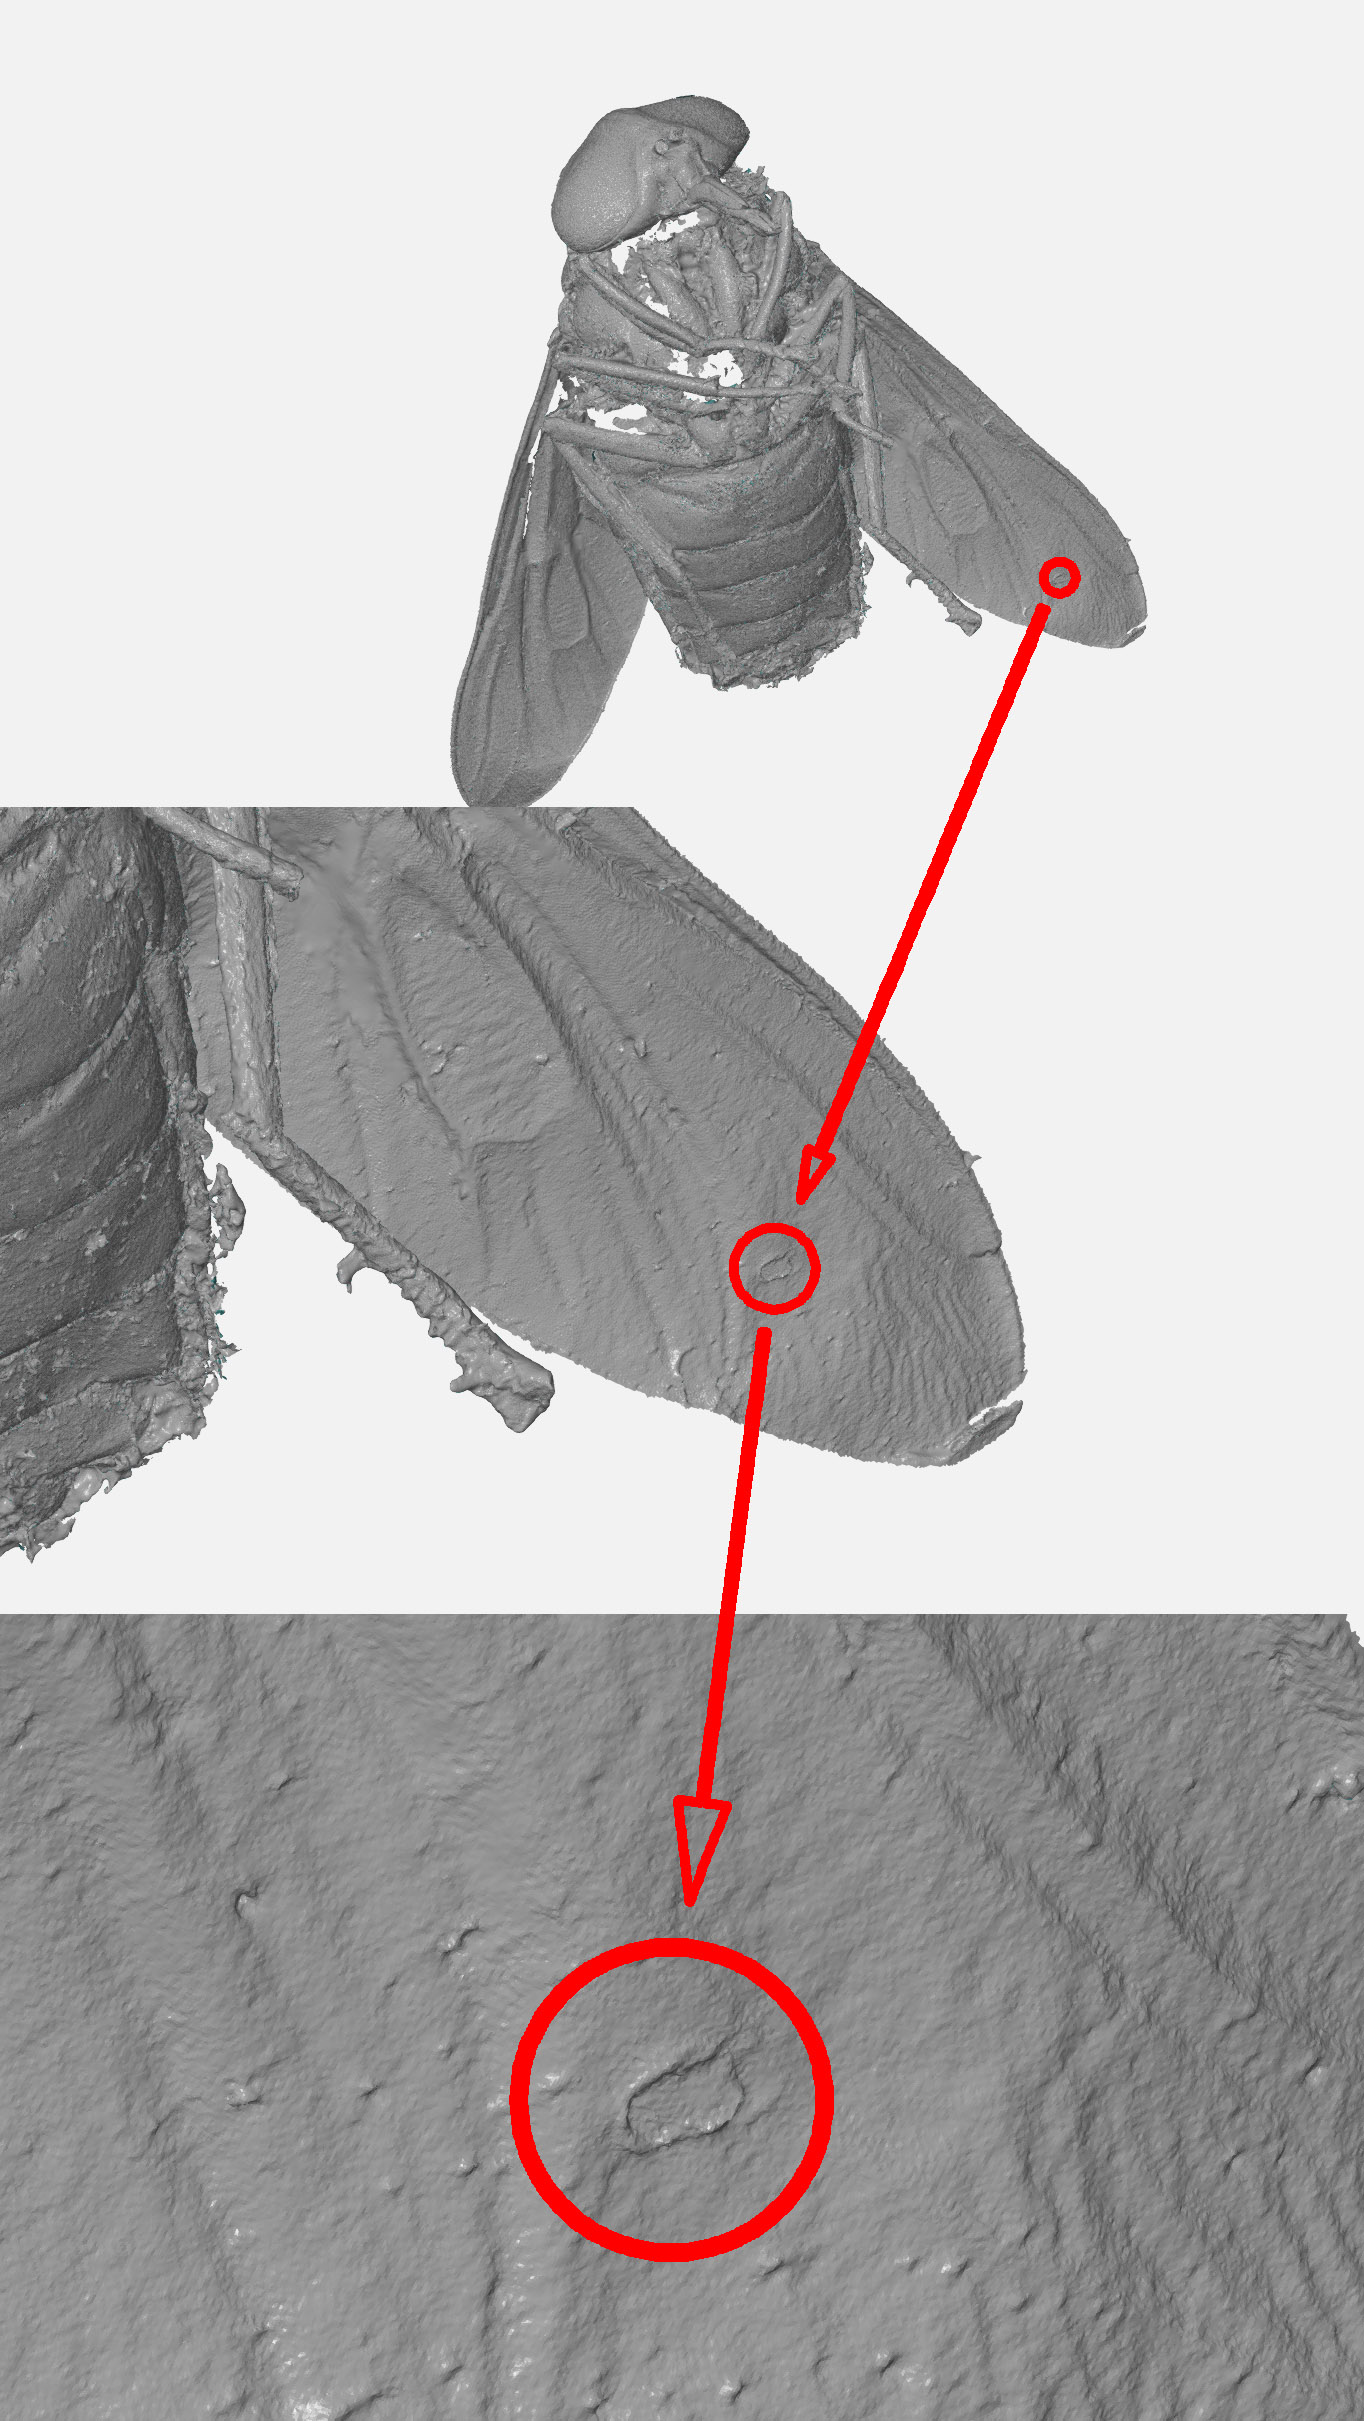 Рис 1. Геометрическая особенность на левом крыле овода. Результирующая сетка треугольников с разрешением 0.01 мм. Длина тела овода 22.3 мм.